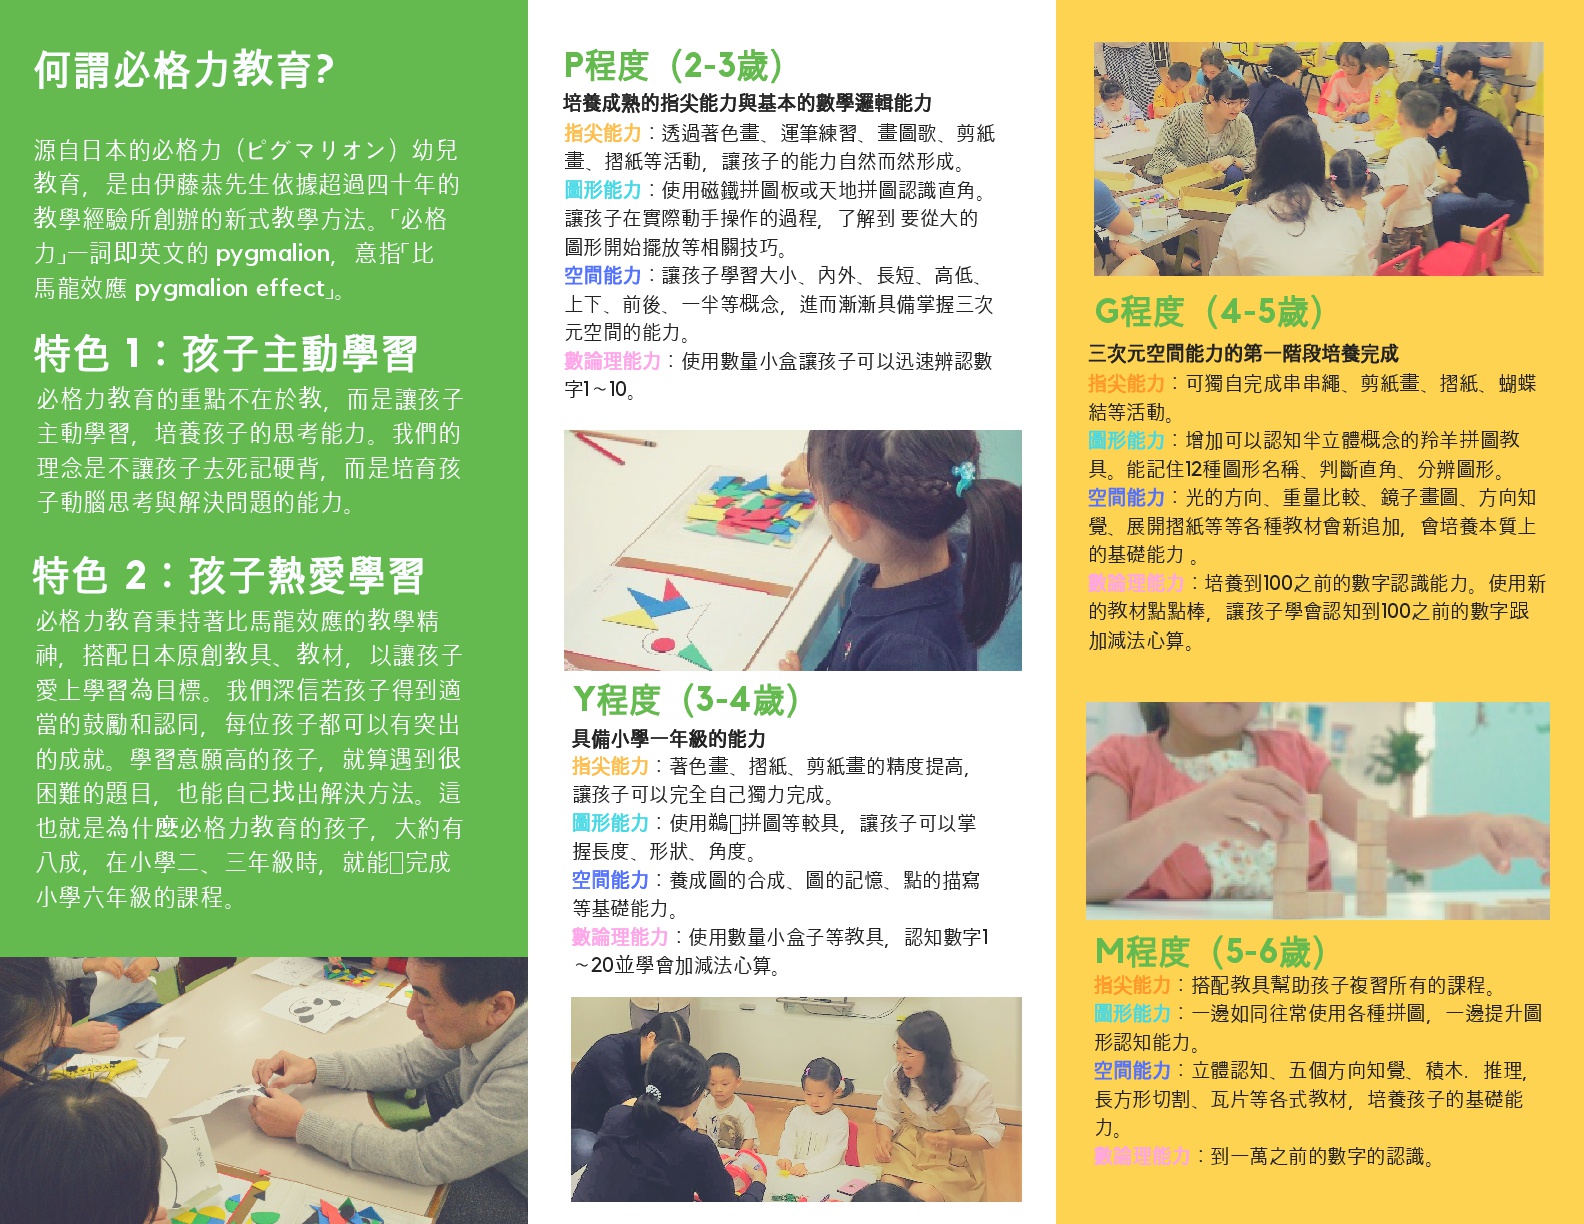 來自日本的 必格力幼兒潛能開發教育  - 20180725153854-504957033.jpg(圖)